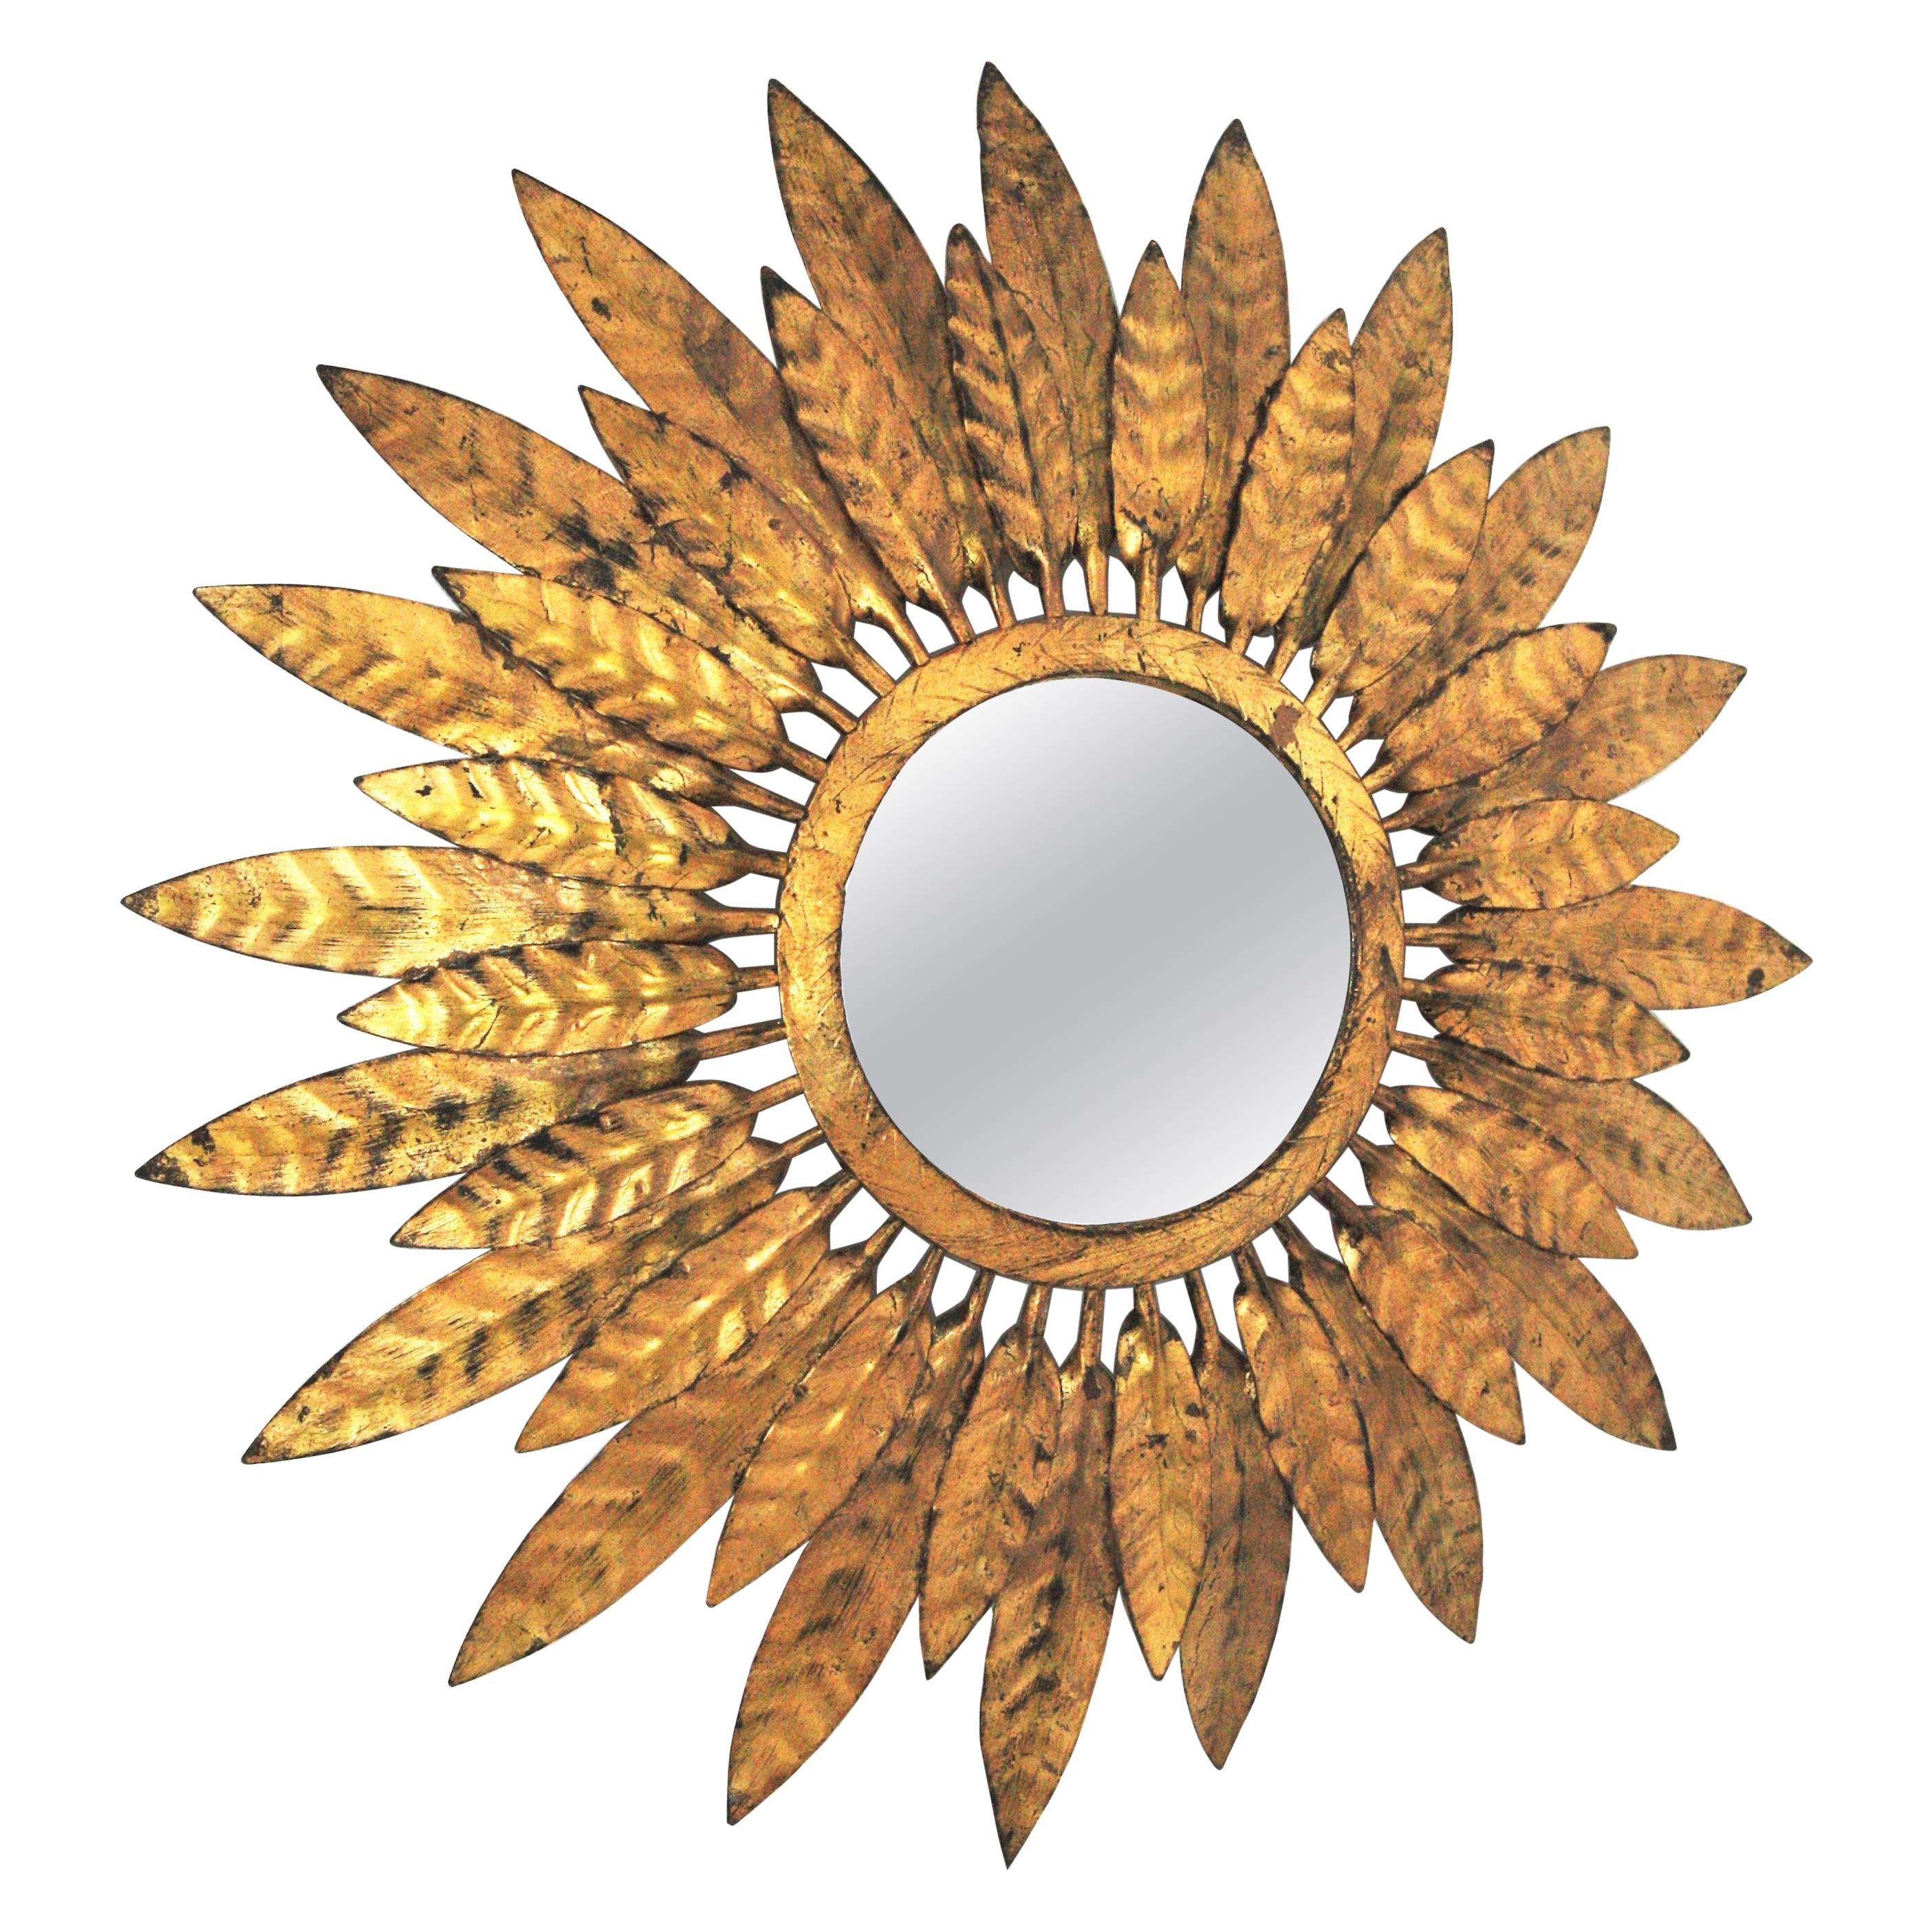 Sunburst-Spiegel mit geflochtenem Rahmen, vergoldetes Eisen